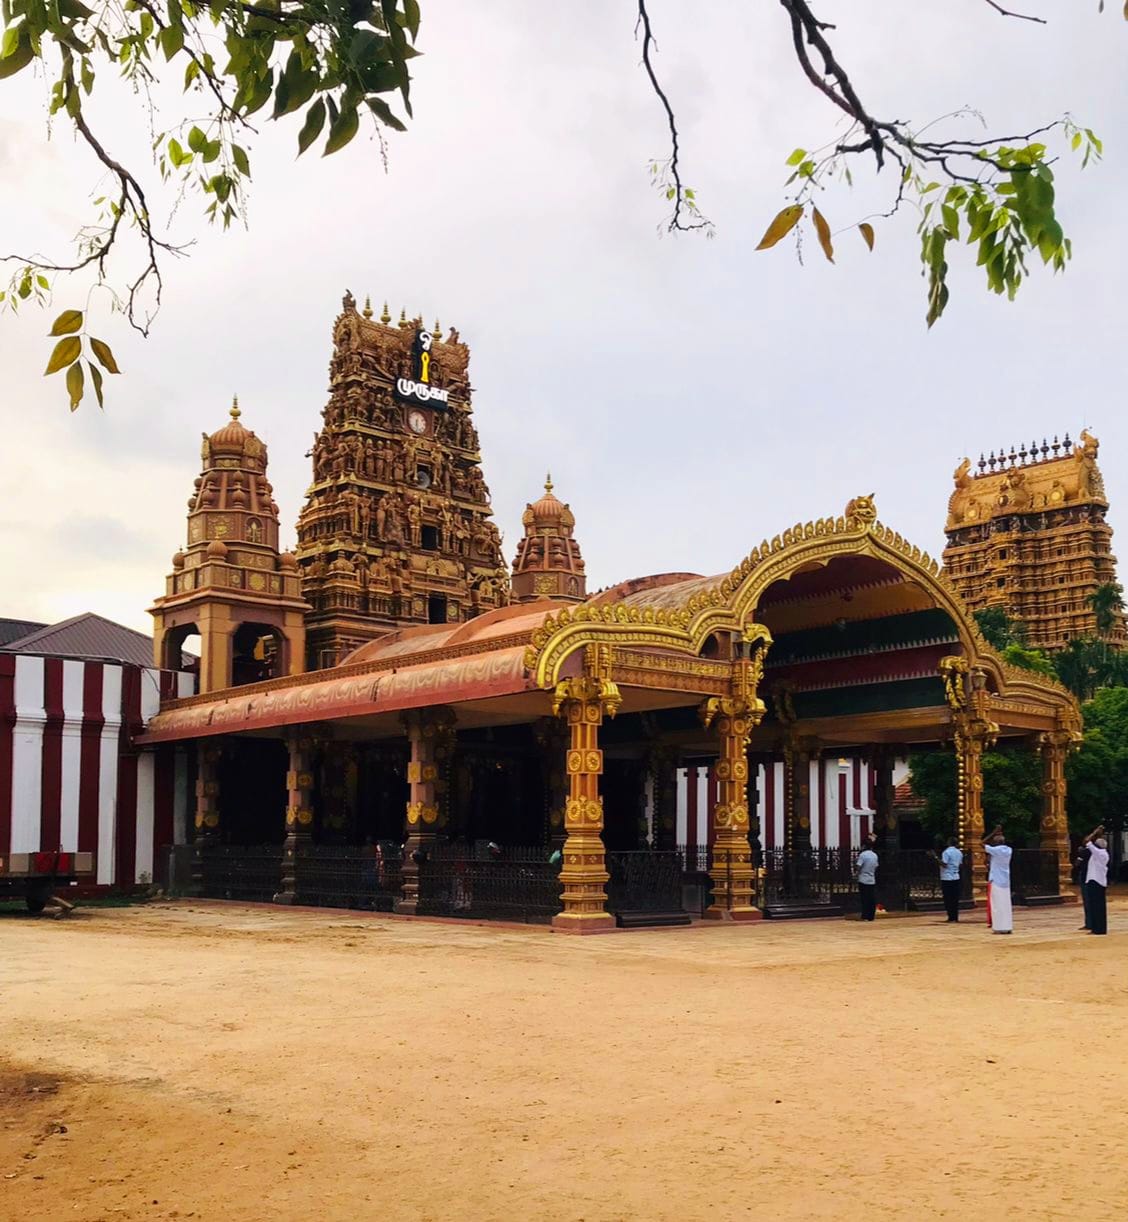 Nallur Kandaswamy t Hindu temple of Murugan